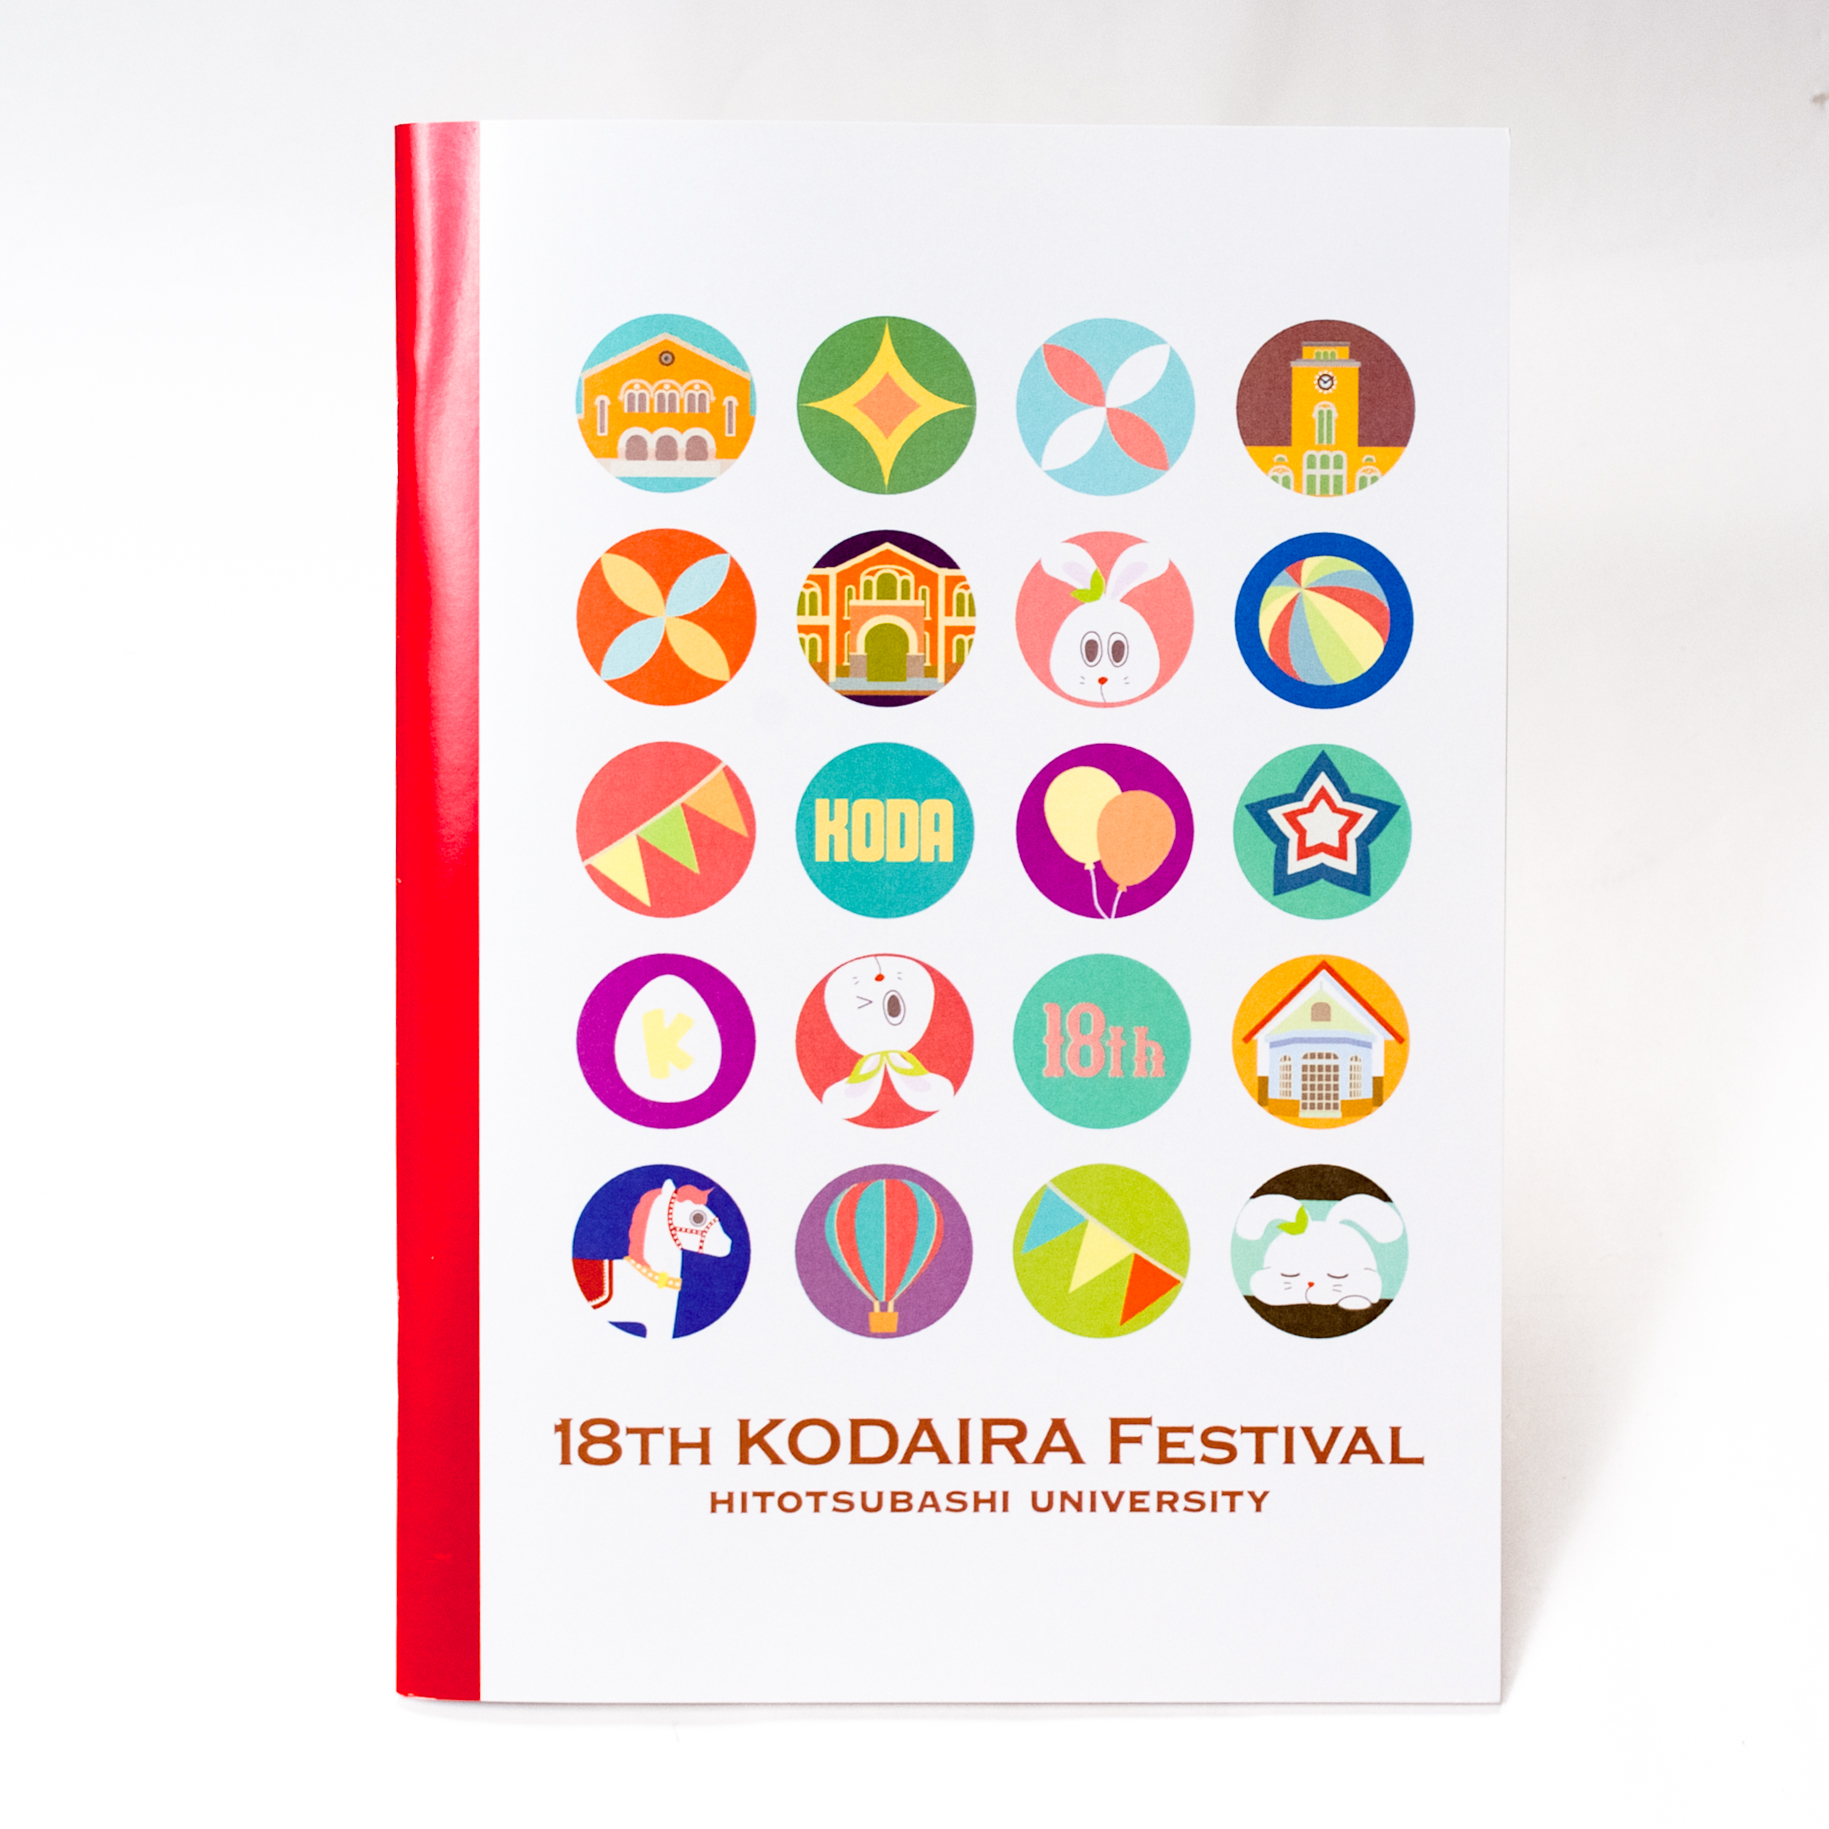 「一橋大学第18回KODAIRA祭実行委員会 様」製作のオリジナルノート